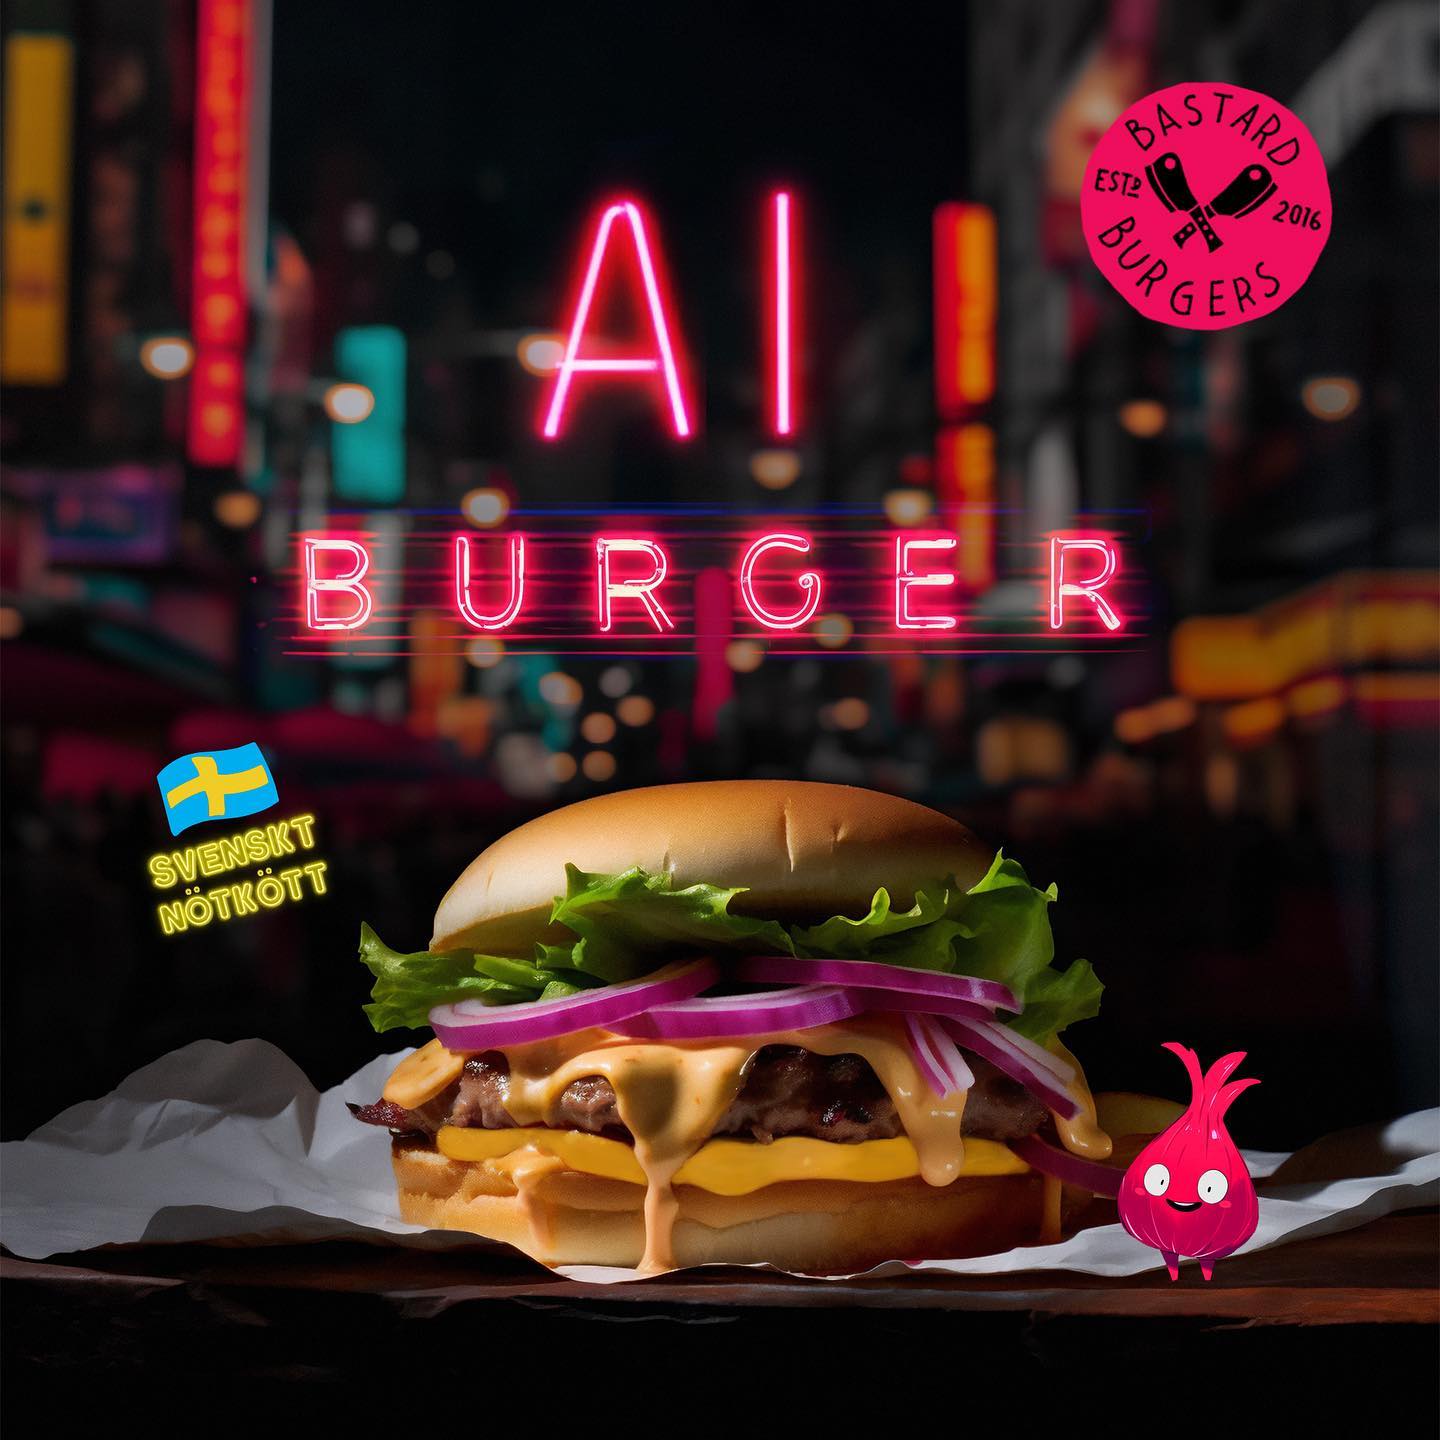 The AI-burger